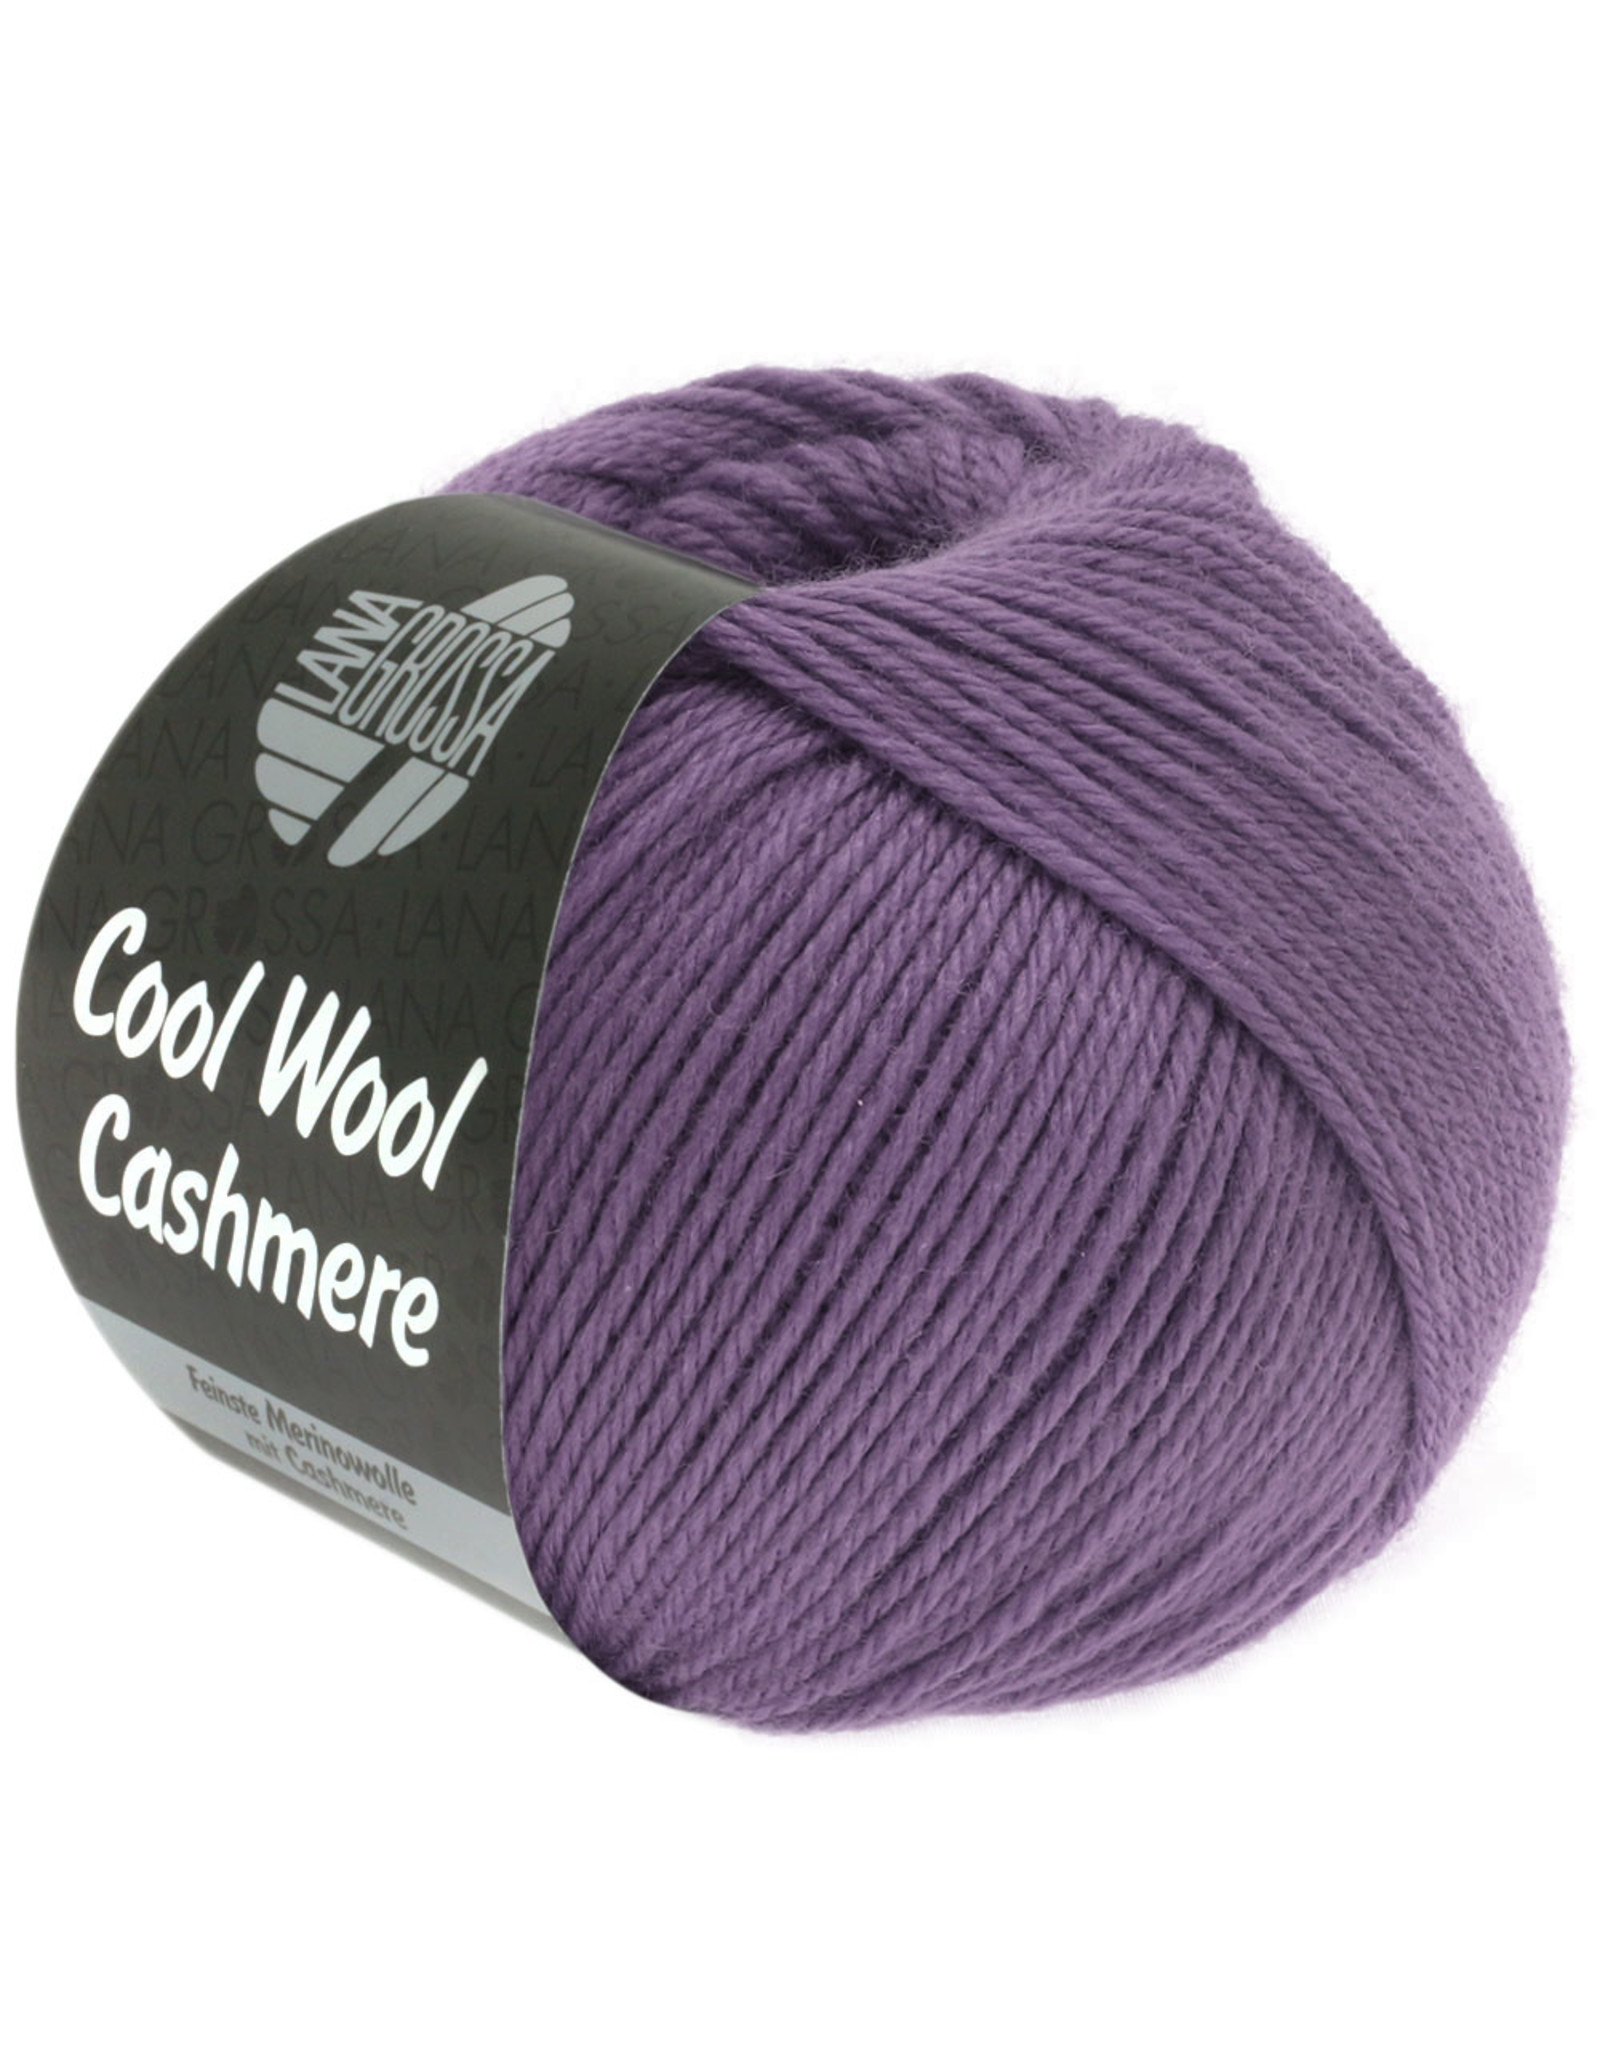 Lana Grossa Lana Grossa Cool wool Cashmere 027